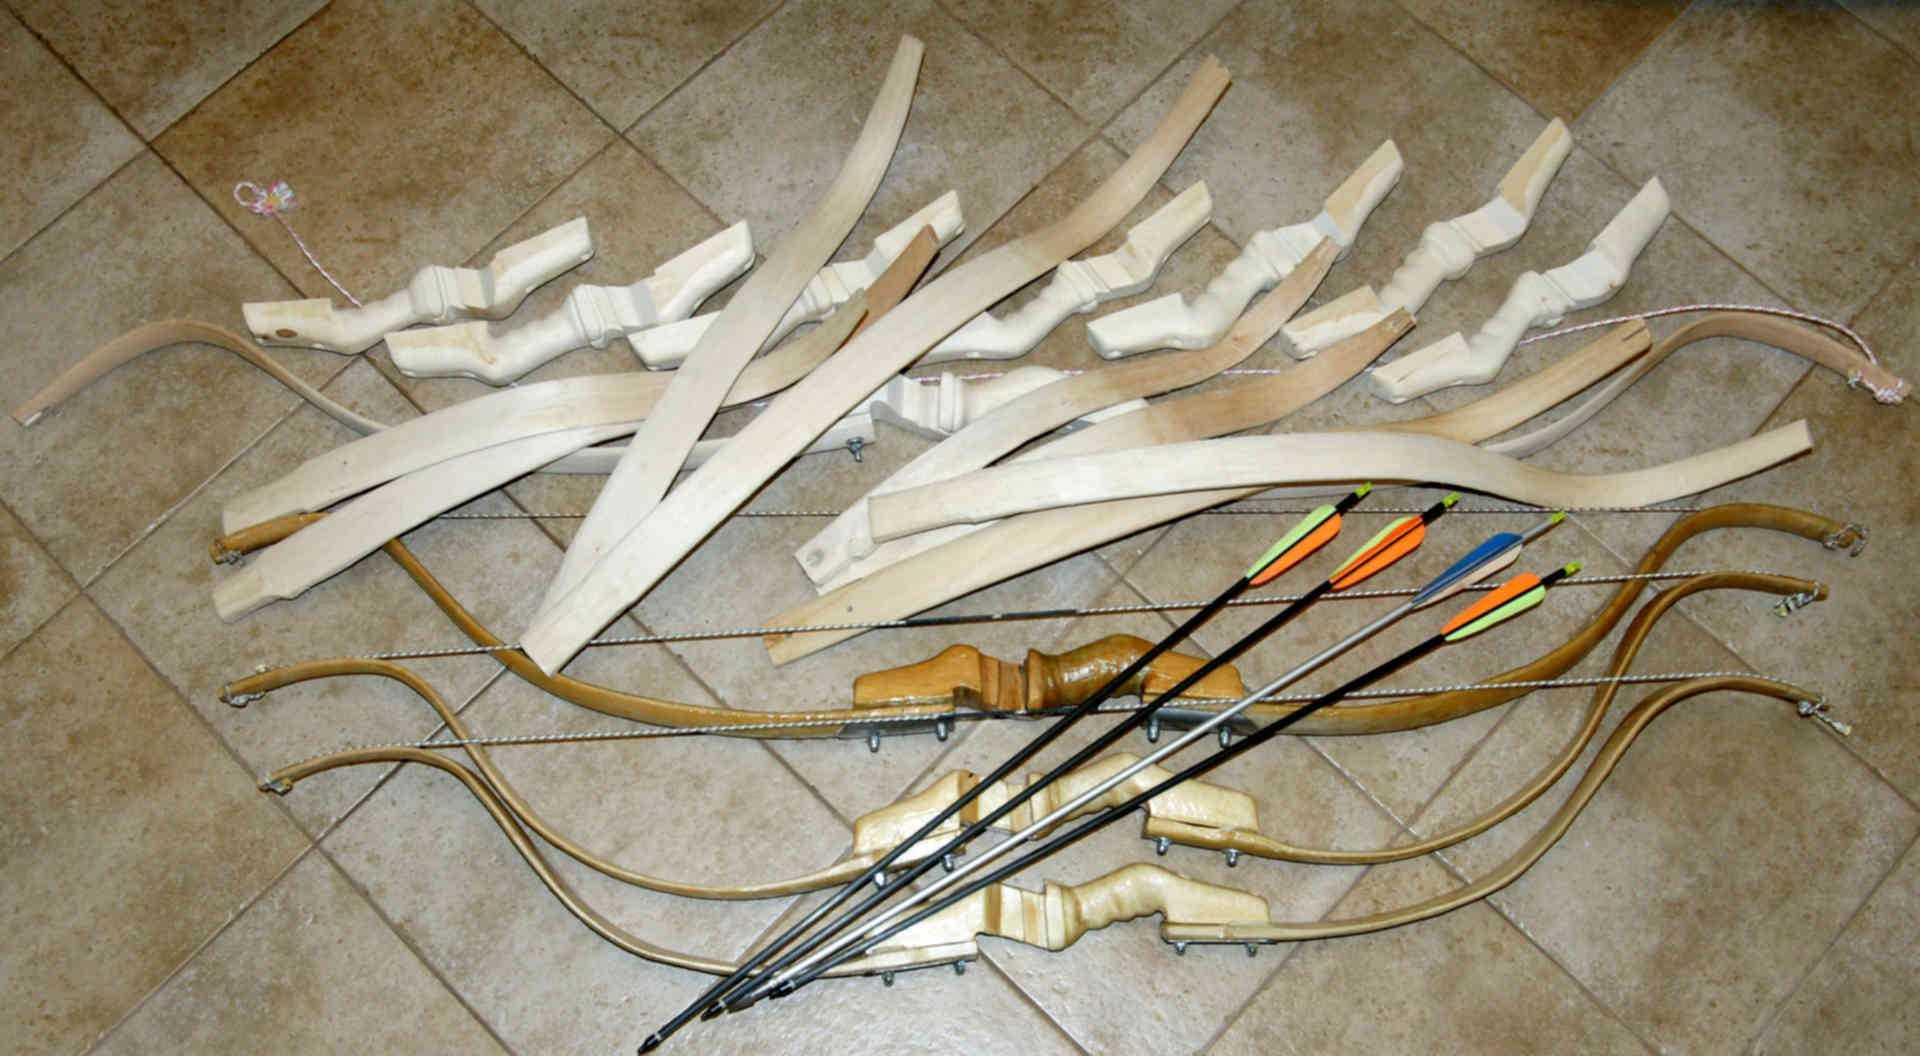 Как сделать лук и стрелы в домашних условиях — полезная информация по выбору подручного материала для самостоятельного изготовления лука, стрел и тети